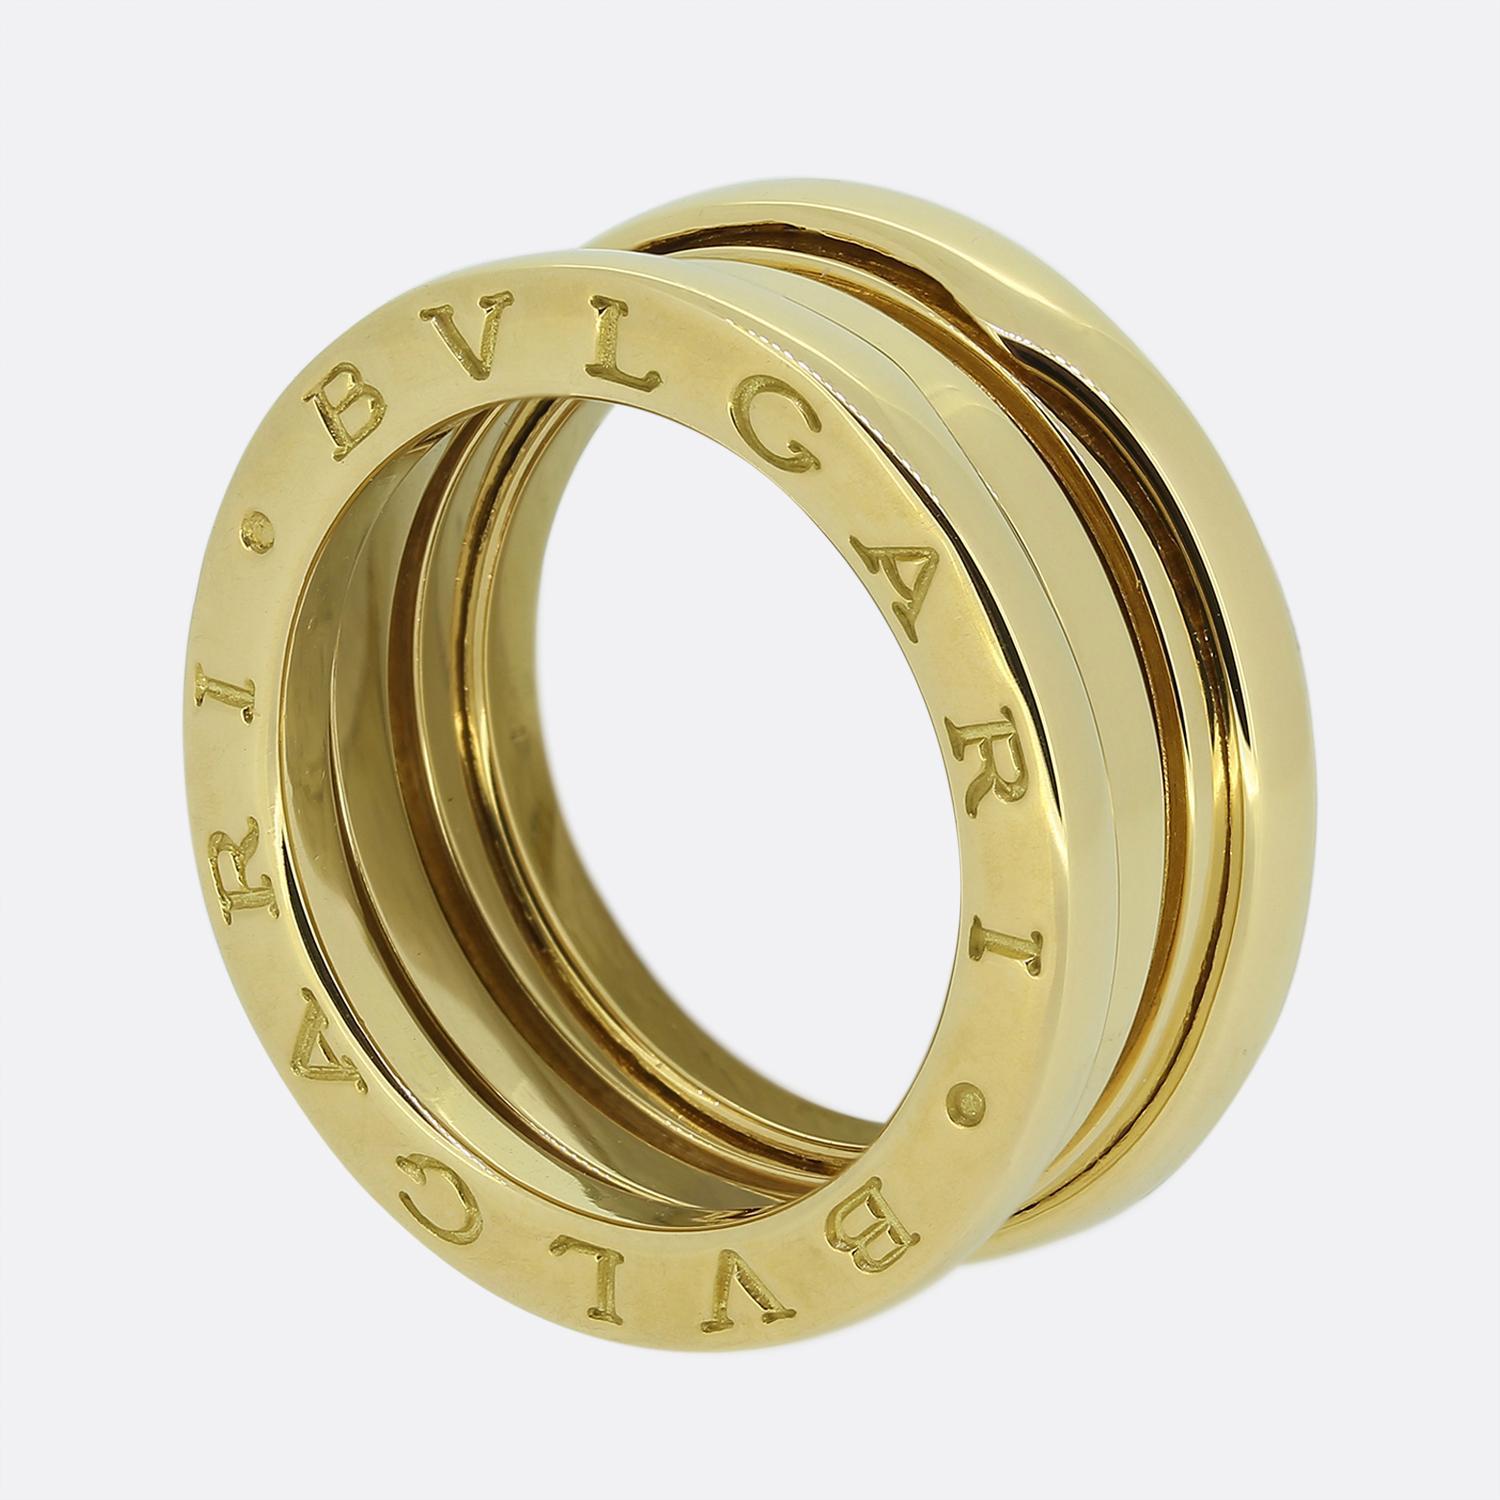 Hier haben wir einen exzellent gearbeiteten B.Zero1 Ring aus dem weltbekannten italienischen Schmuckhaus Bvlagri. Dies ist das Modell mit drei Bändern aus 18 Karat Gelbgold. 

Die Kollektion B.zero1 ist inspiriert vom römischen Kolosseum, dem